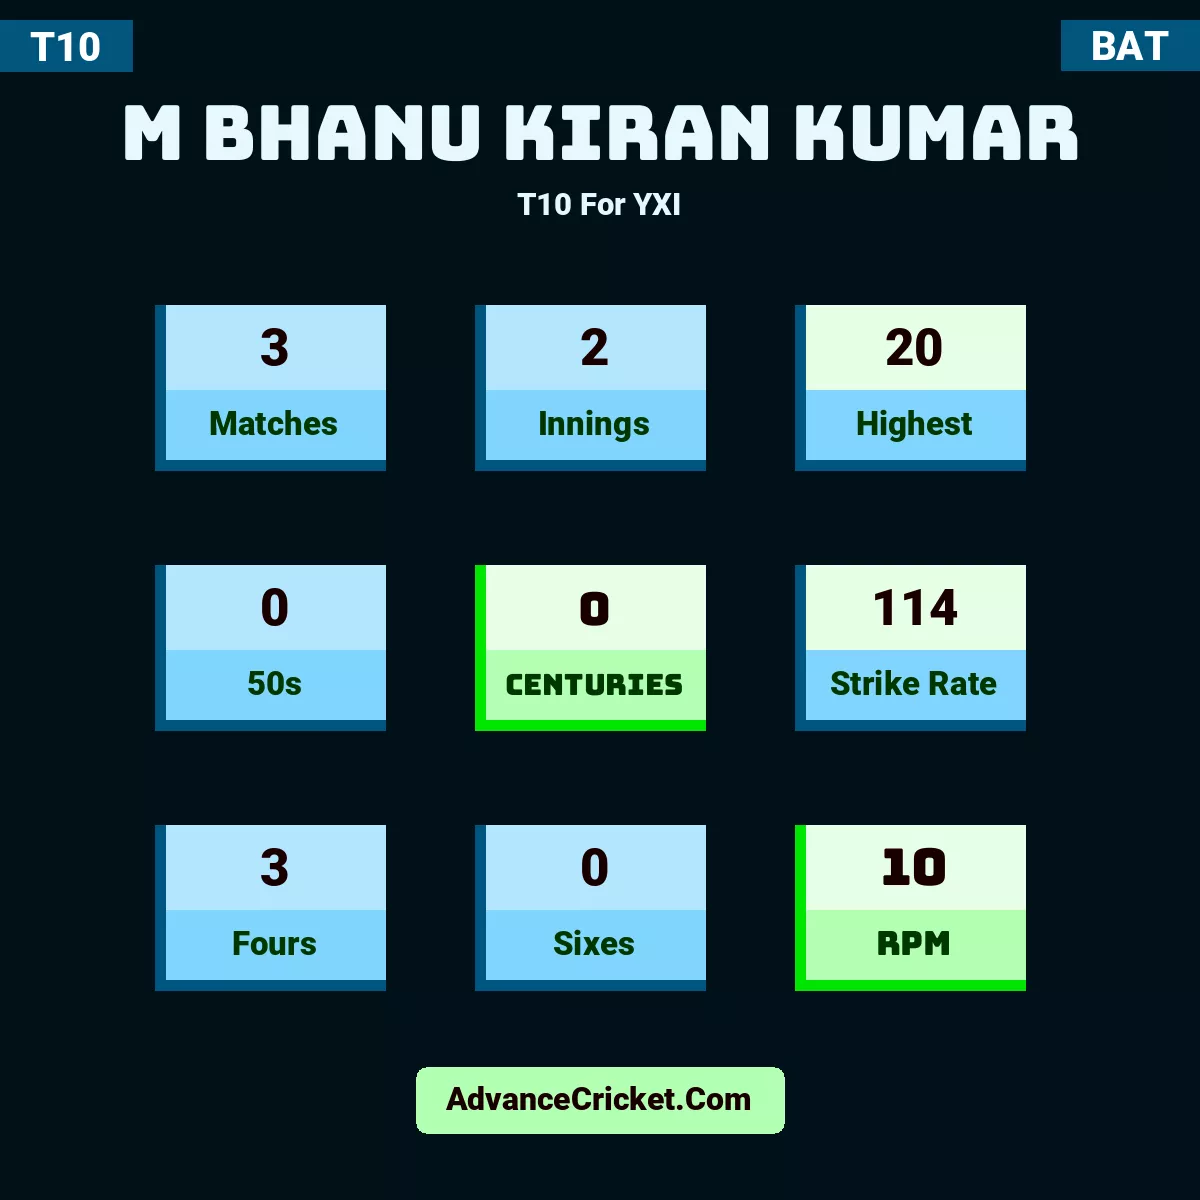 M Bhanu Kiran Kumar T10  For YXI, M Bhanu Kiran Kumar played 3 matches, scored 20 runs as highest, 0 half-centuries, and 0 centuries, with a strike rate of 114. M.Bhanu.Kiran.Kumar hit 3 fours and 0 sixes, with an RPM of 10.